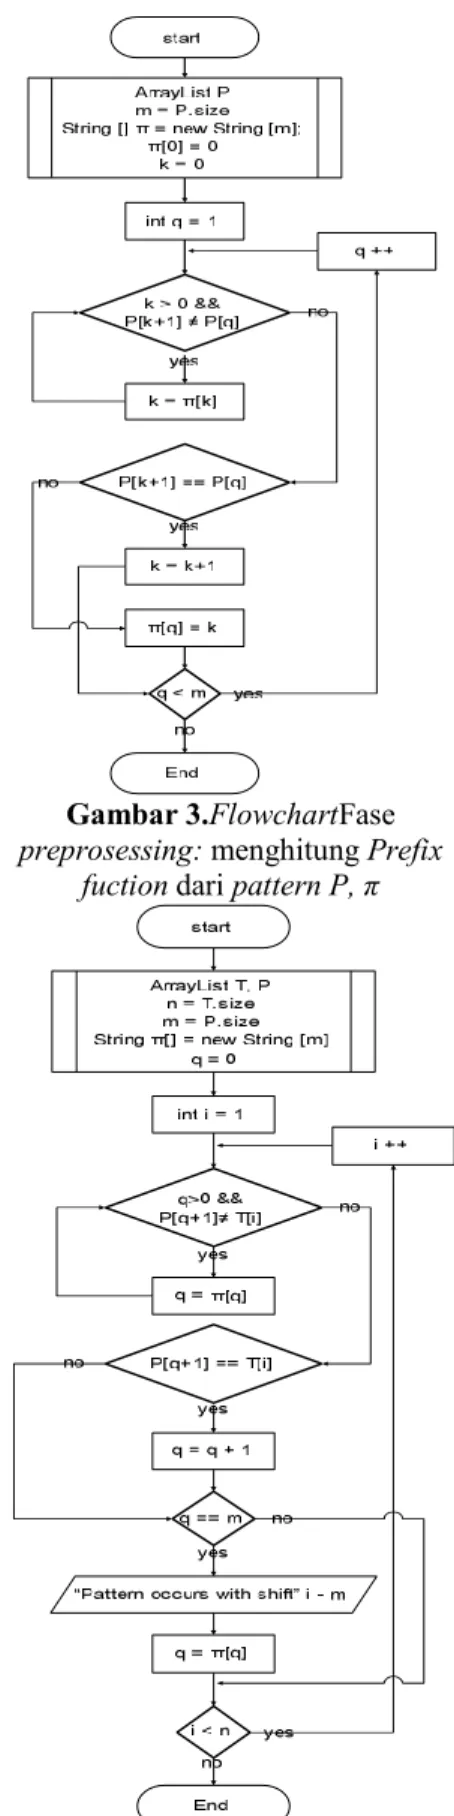 Gambar 2.Flowchart proses permutasi  metode Fisher-Yates Shuffle E.  Analisis proses koreksi 